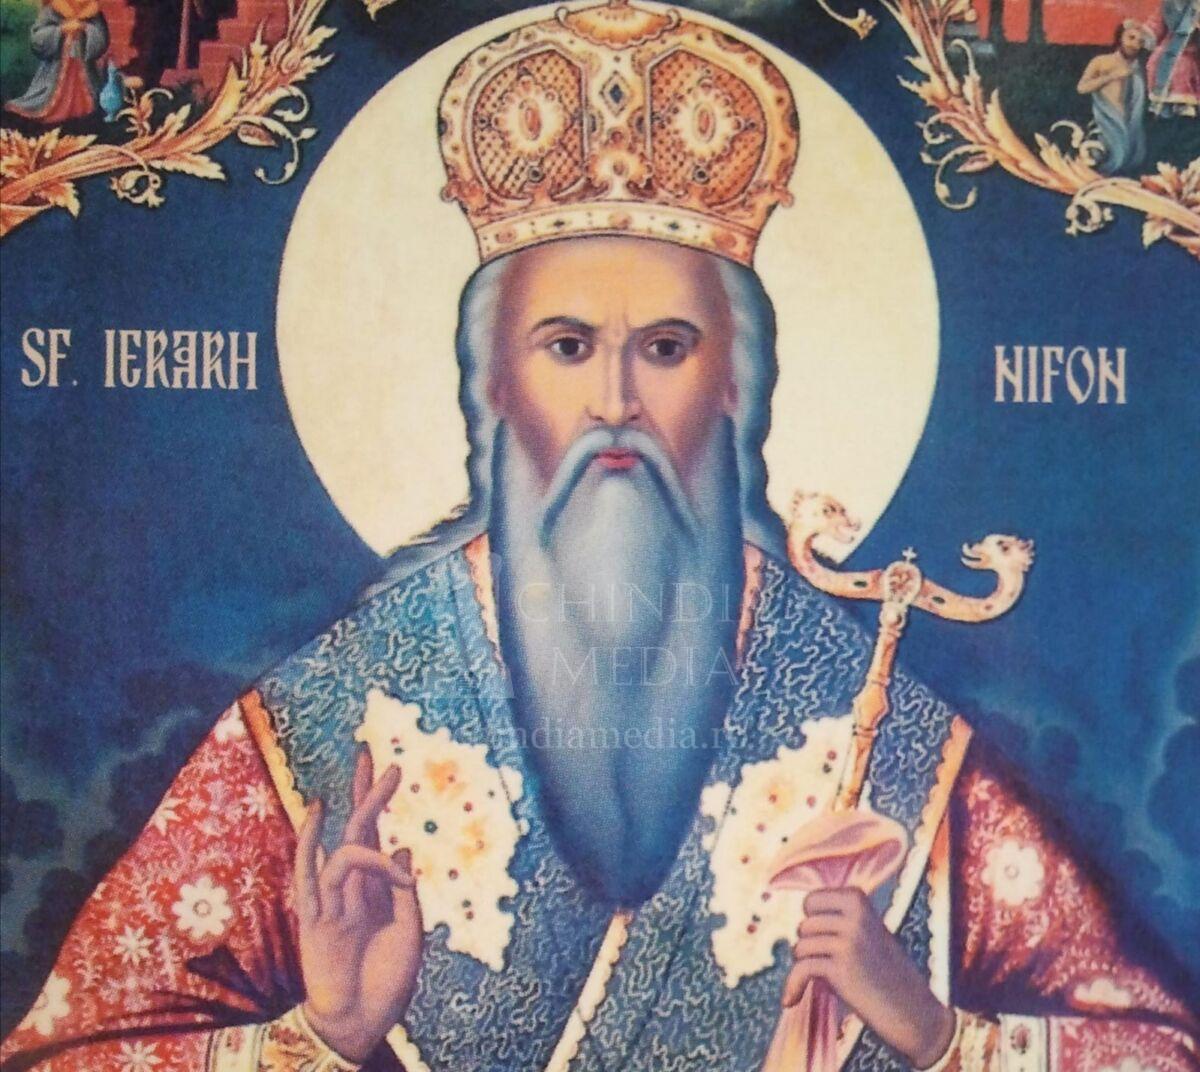 You are currently viewing EDITORIAL: Epoca și personalitatea Patriarhului Nifon (1434/1440-1508) în percepția lui I. D. Petrescu (1818-1903) – Partea I